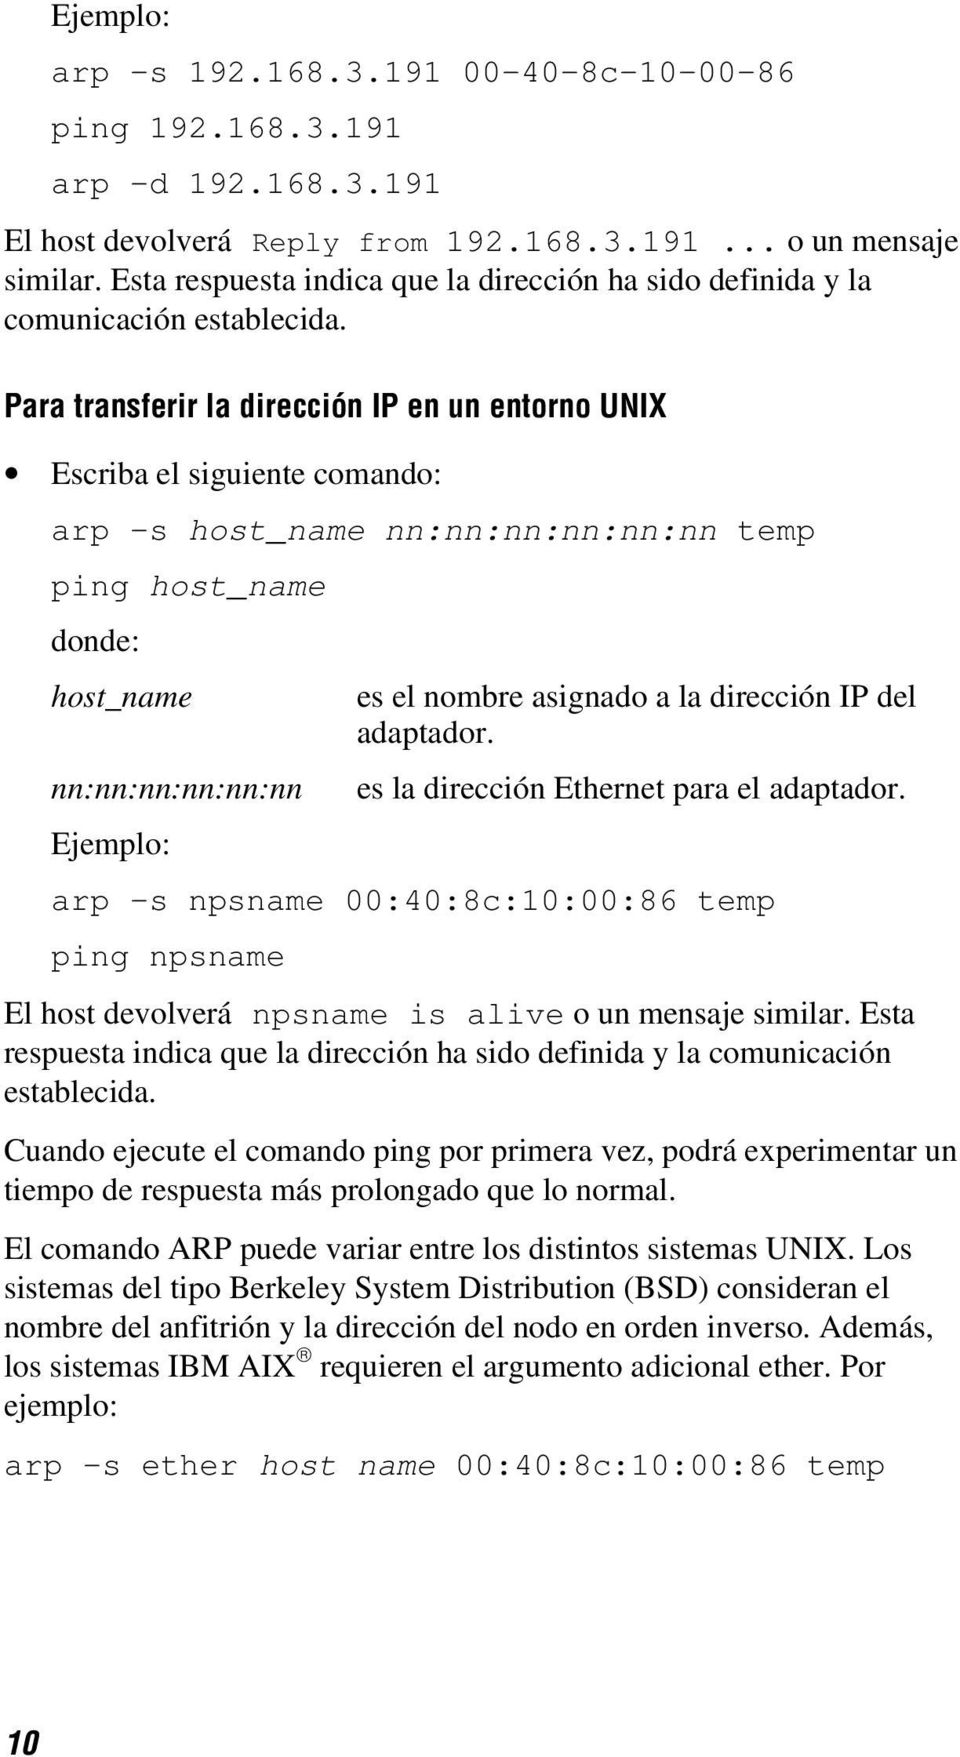 Para transferir la dirección IP en un entorno UNIX Escriba el siguiente comando: arp -s host_name nn:nn:nn:nn:nn:nn temp ping host_name donde: host_name es el nombre asignado a la dirección IP del